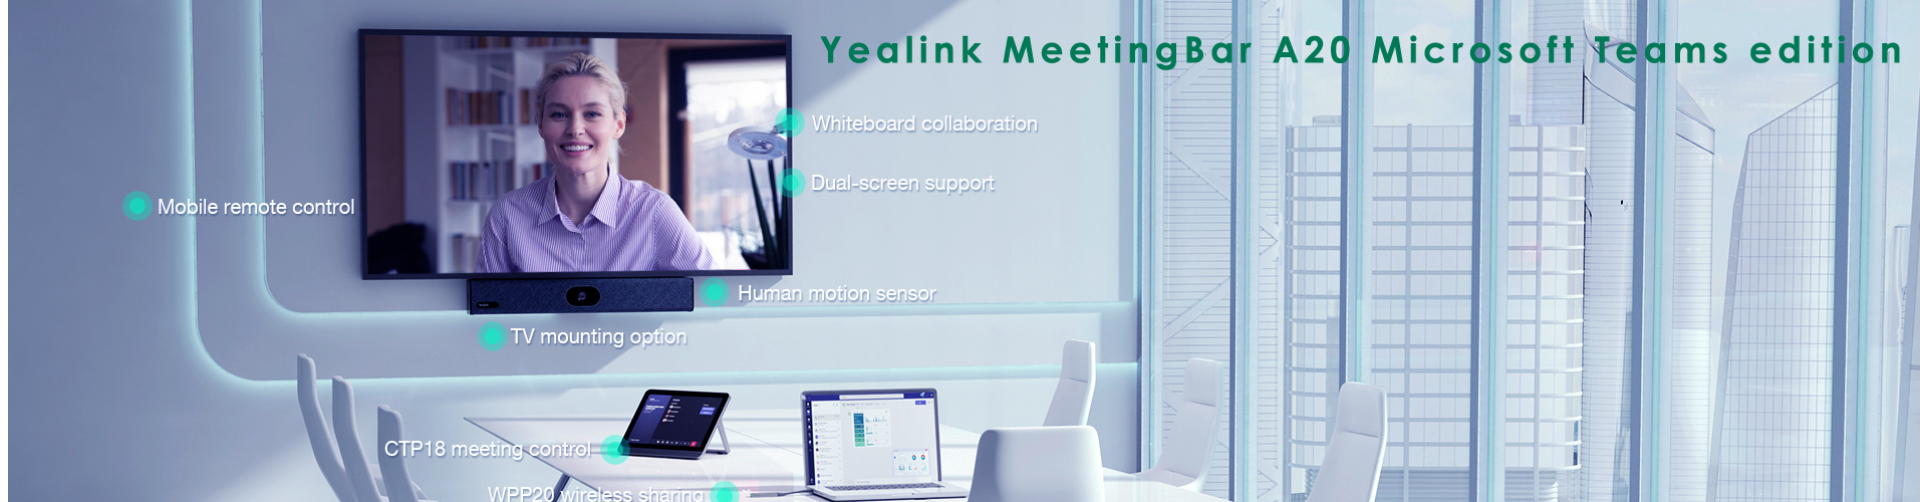 Yealink Meeting Bar